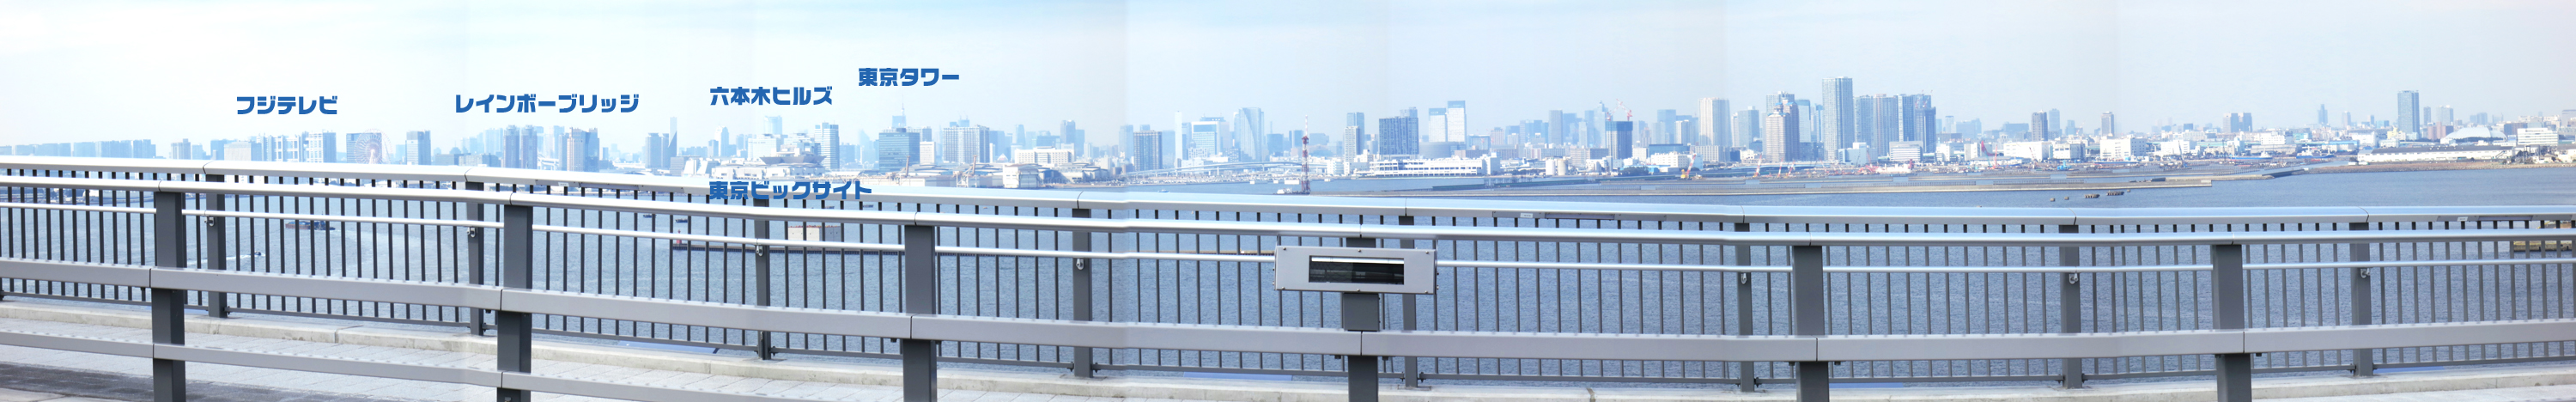 東京ゲートブリッジ遊歩道から撮影したパノラマ撮影にはランドマークが一同に写せました